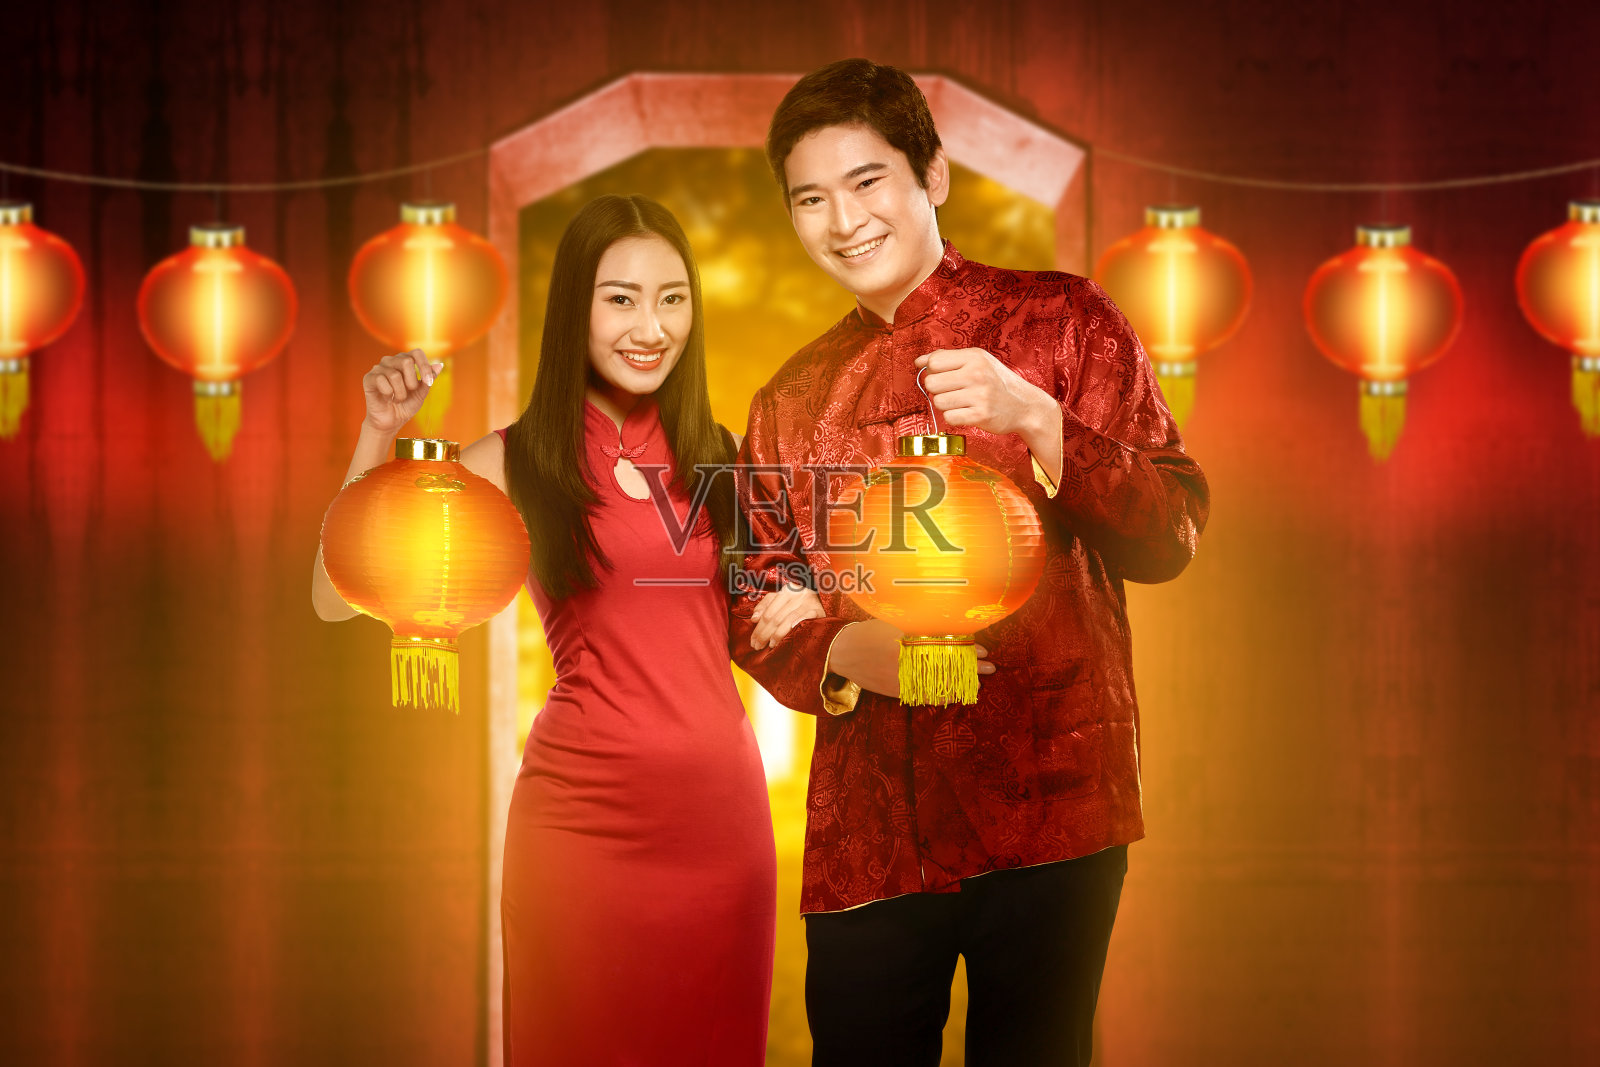 身着旗袍、手捧红灯笼的中国夫妇微笑着照片摄影图片